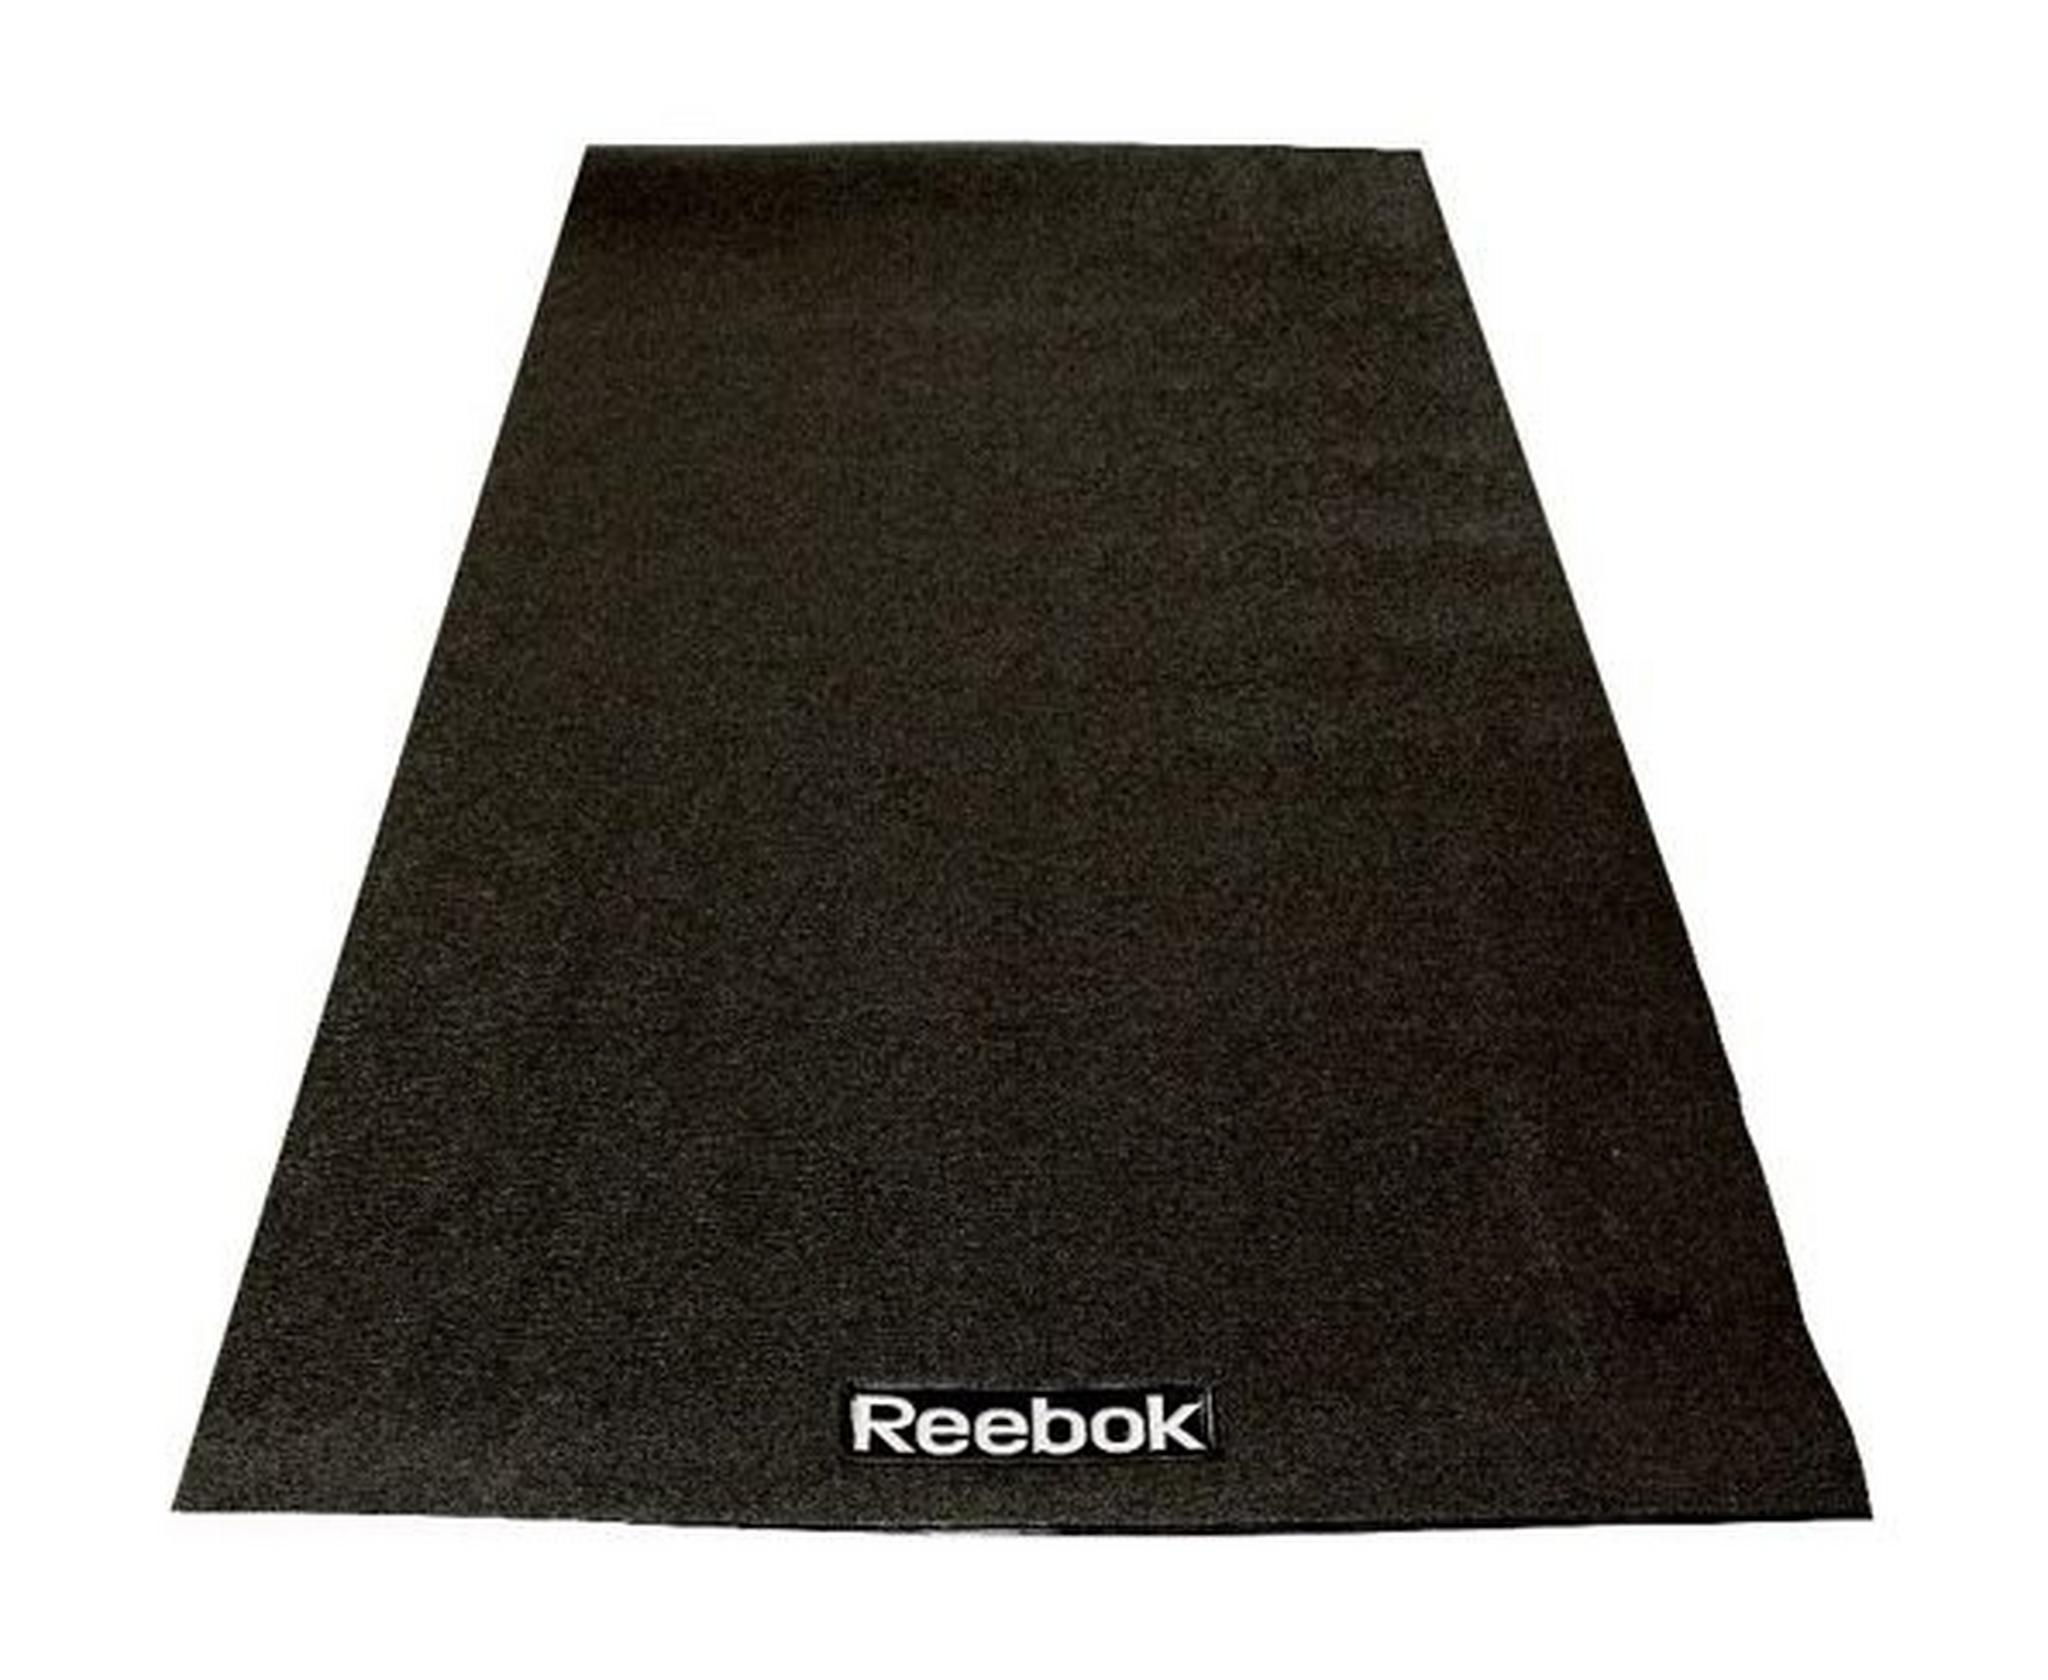 Reebok Bike/Cross Trainer Floor Mat (RAMT-10229)